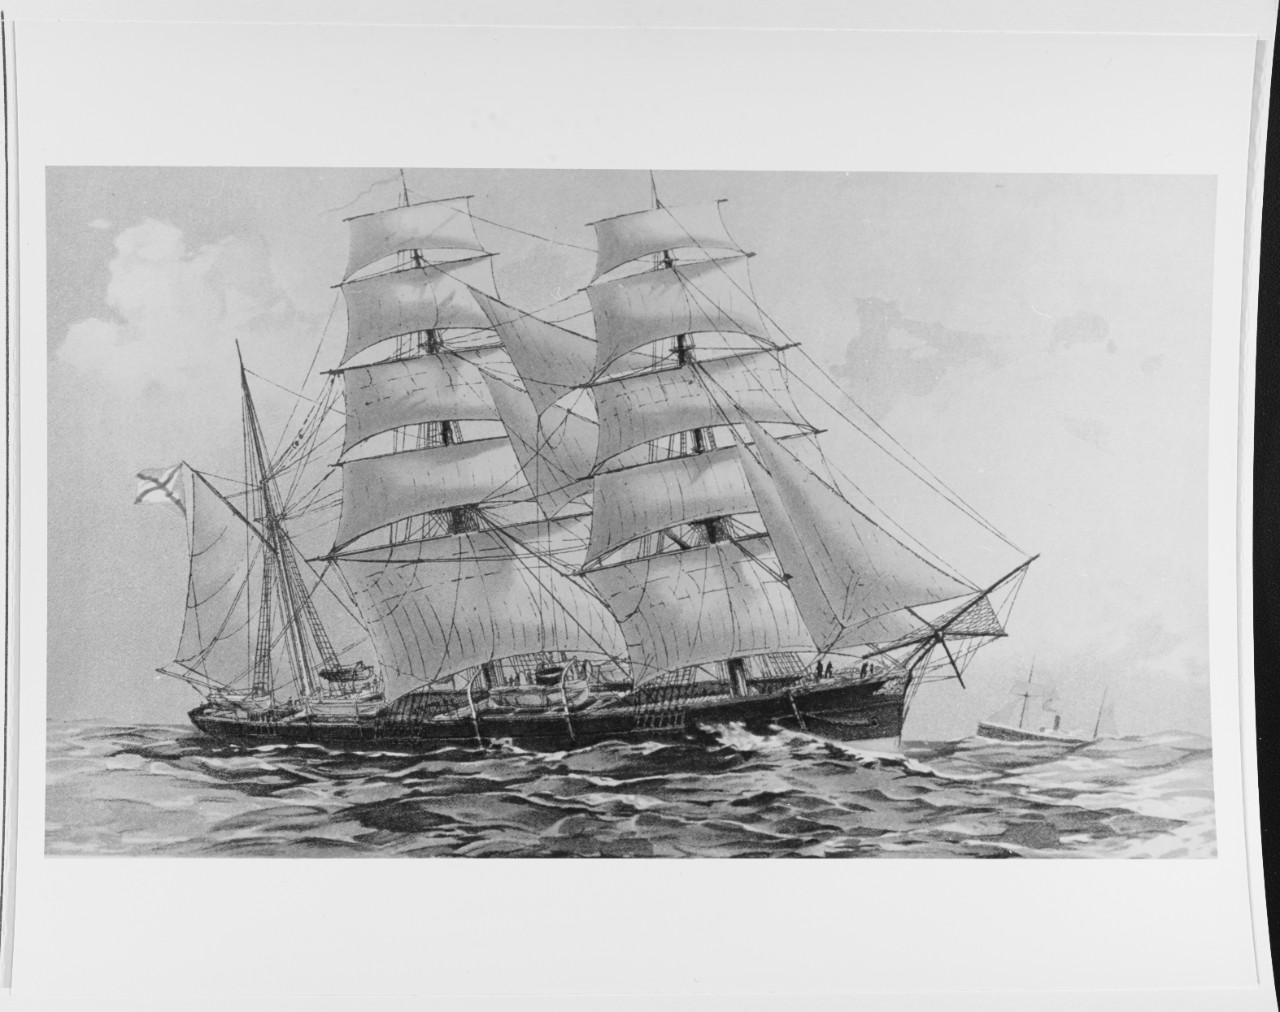 VESTNIK (Russian cruiser, 1879)